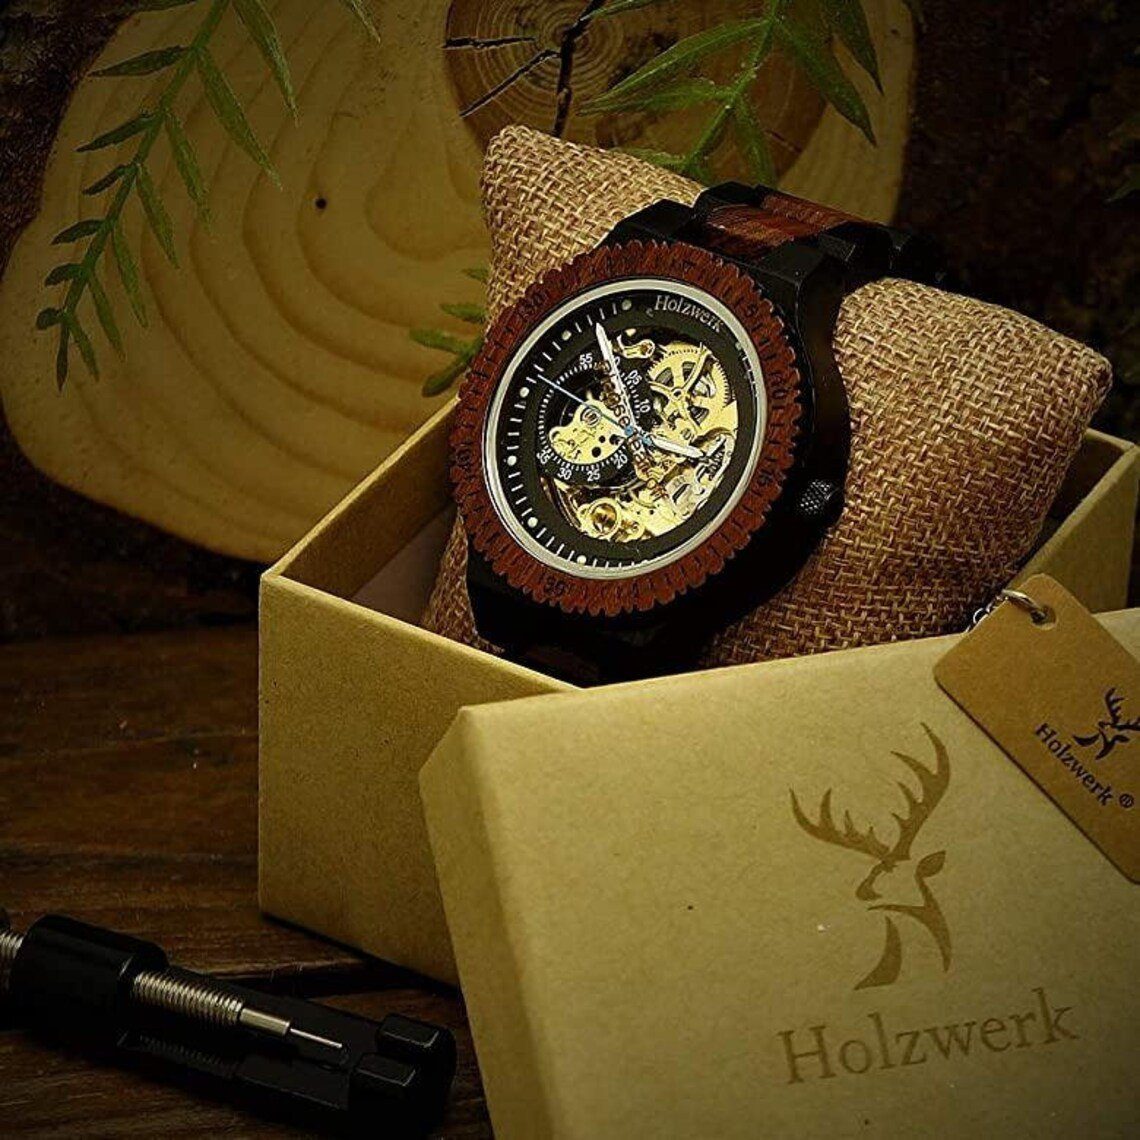 Holzwerk Automatikuhr DASSEL Armband Holz braun, Herren in offene Unruhe dunkel gold Uhr